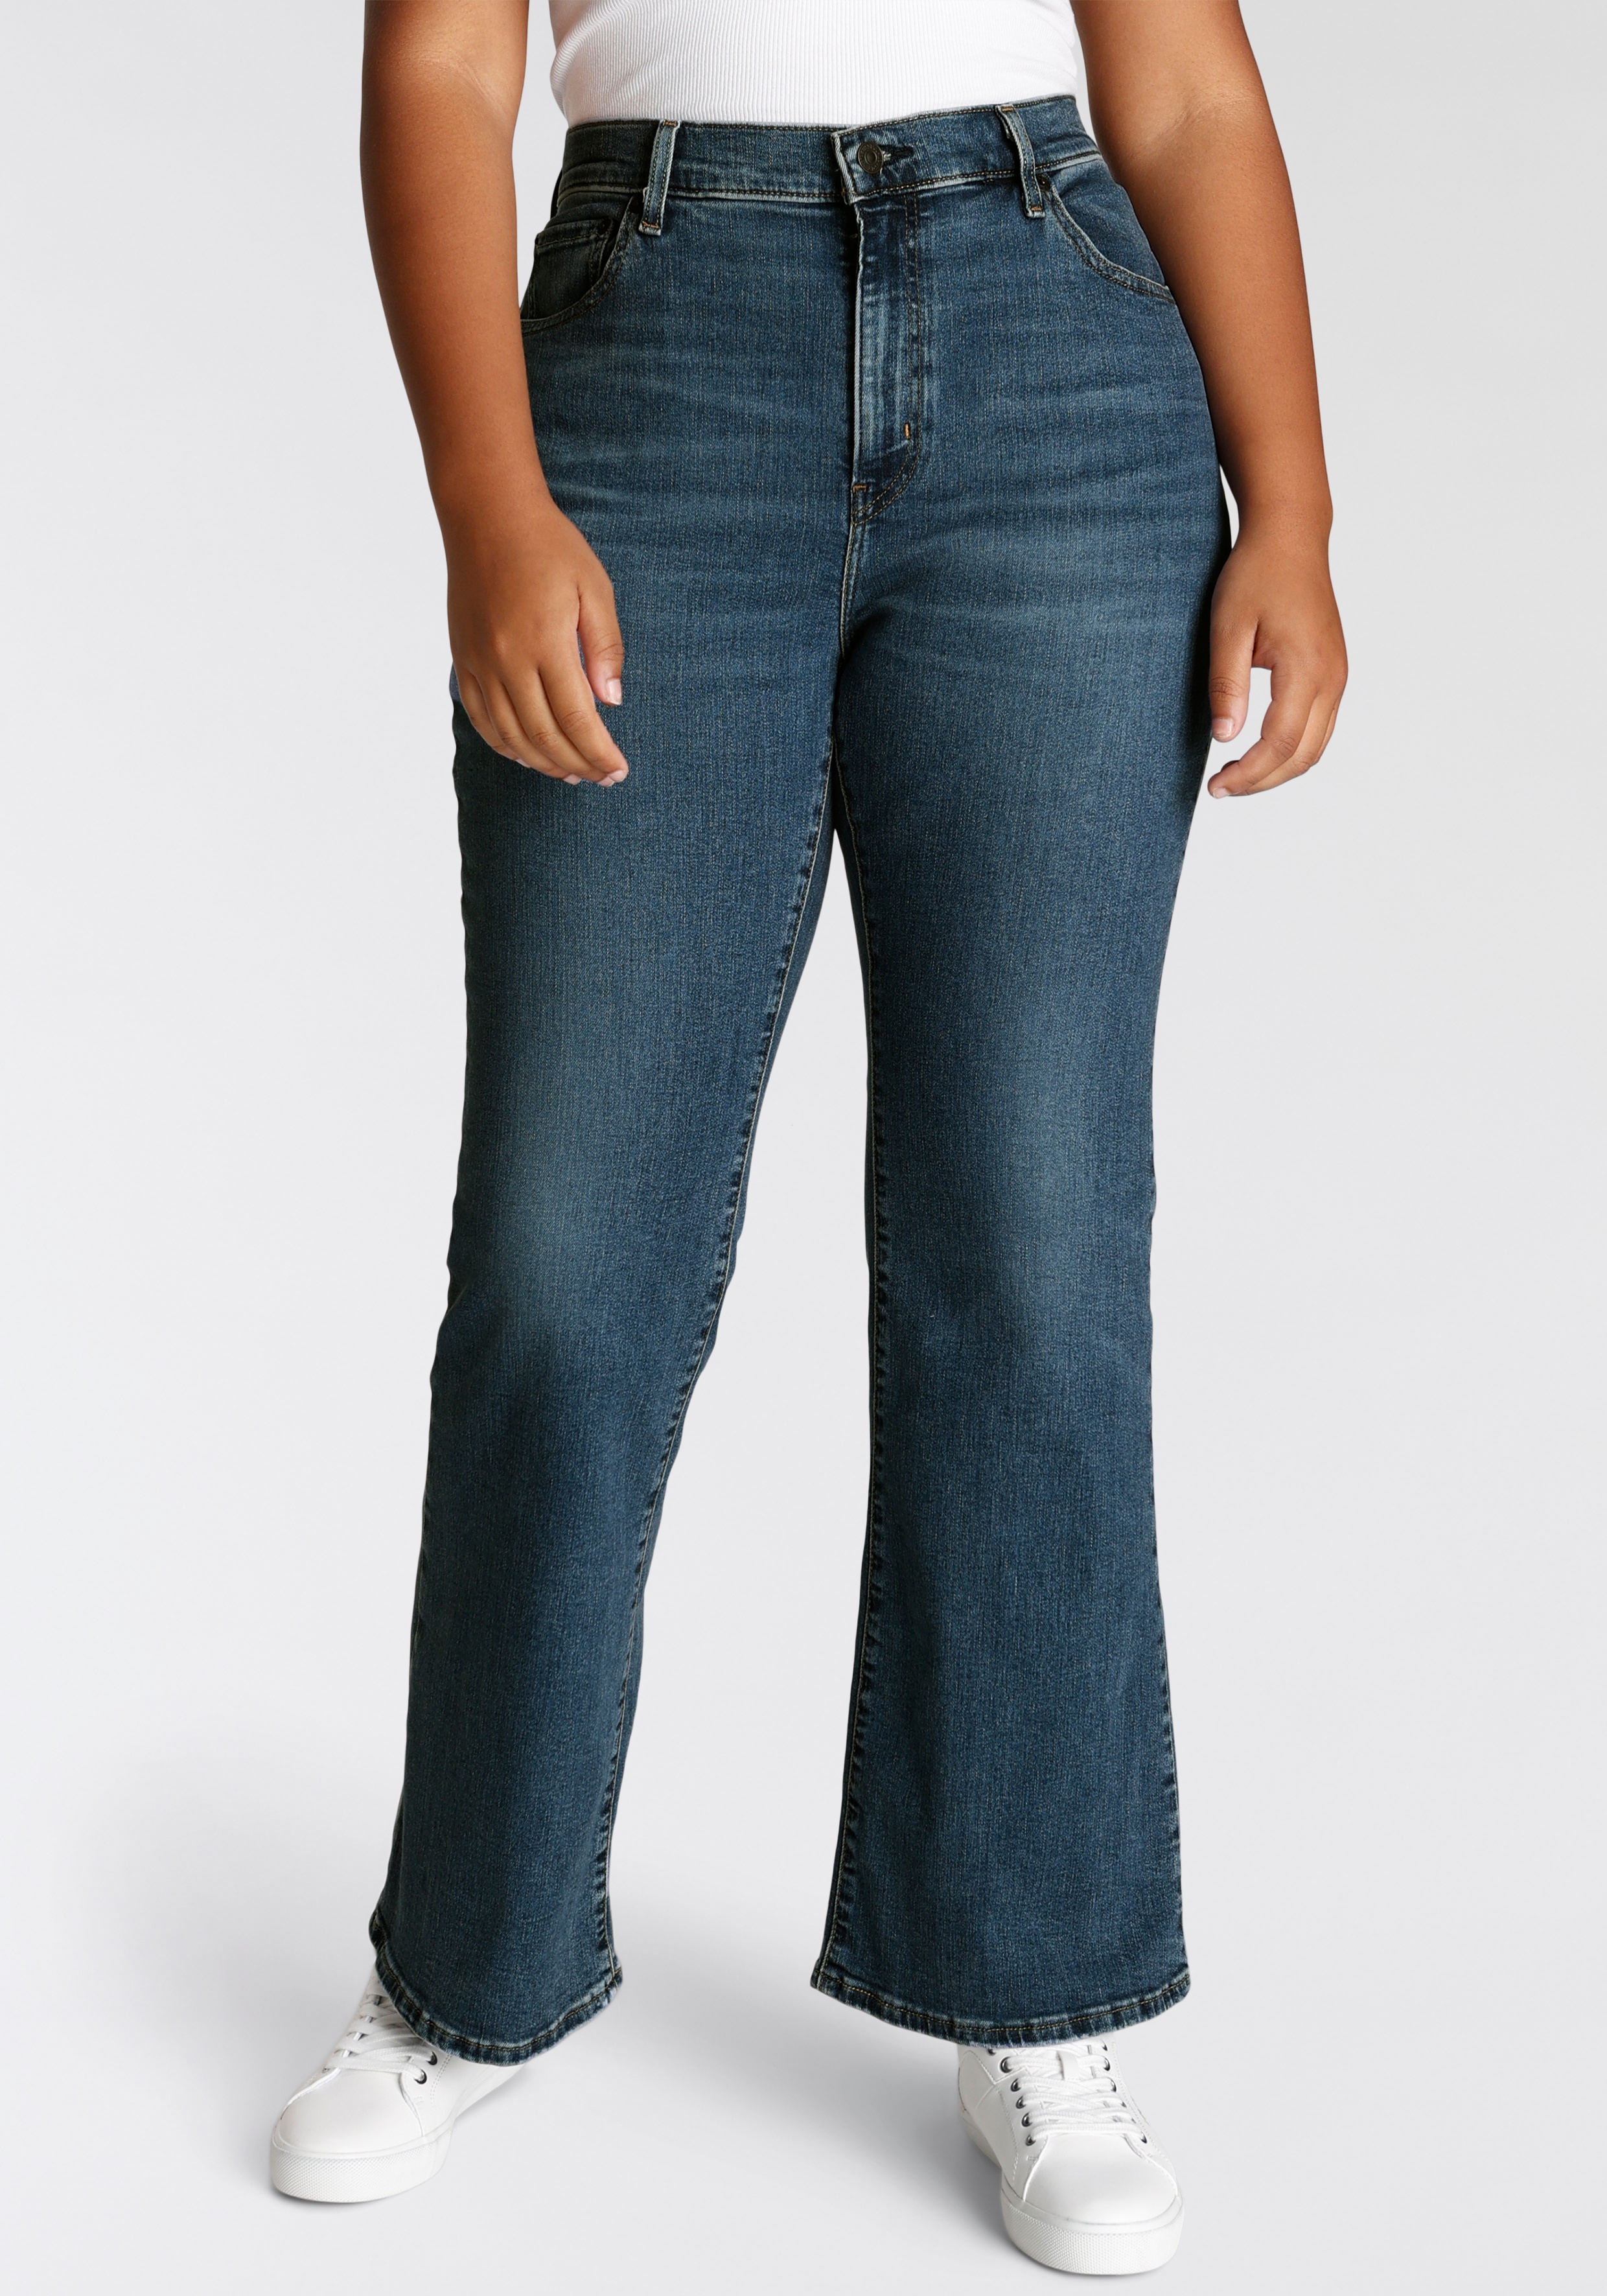 Bootcut-Jeans LEVI'S PLUS "726 PL HR FLARE" Gr. 18 (48), Länge 30, blau (blue wave mid) Damen Jeans Bootcut